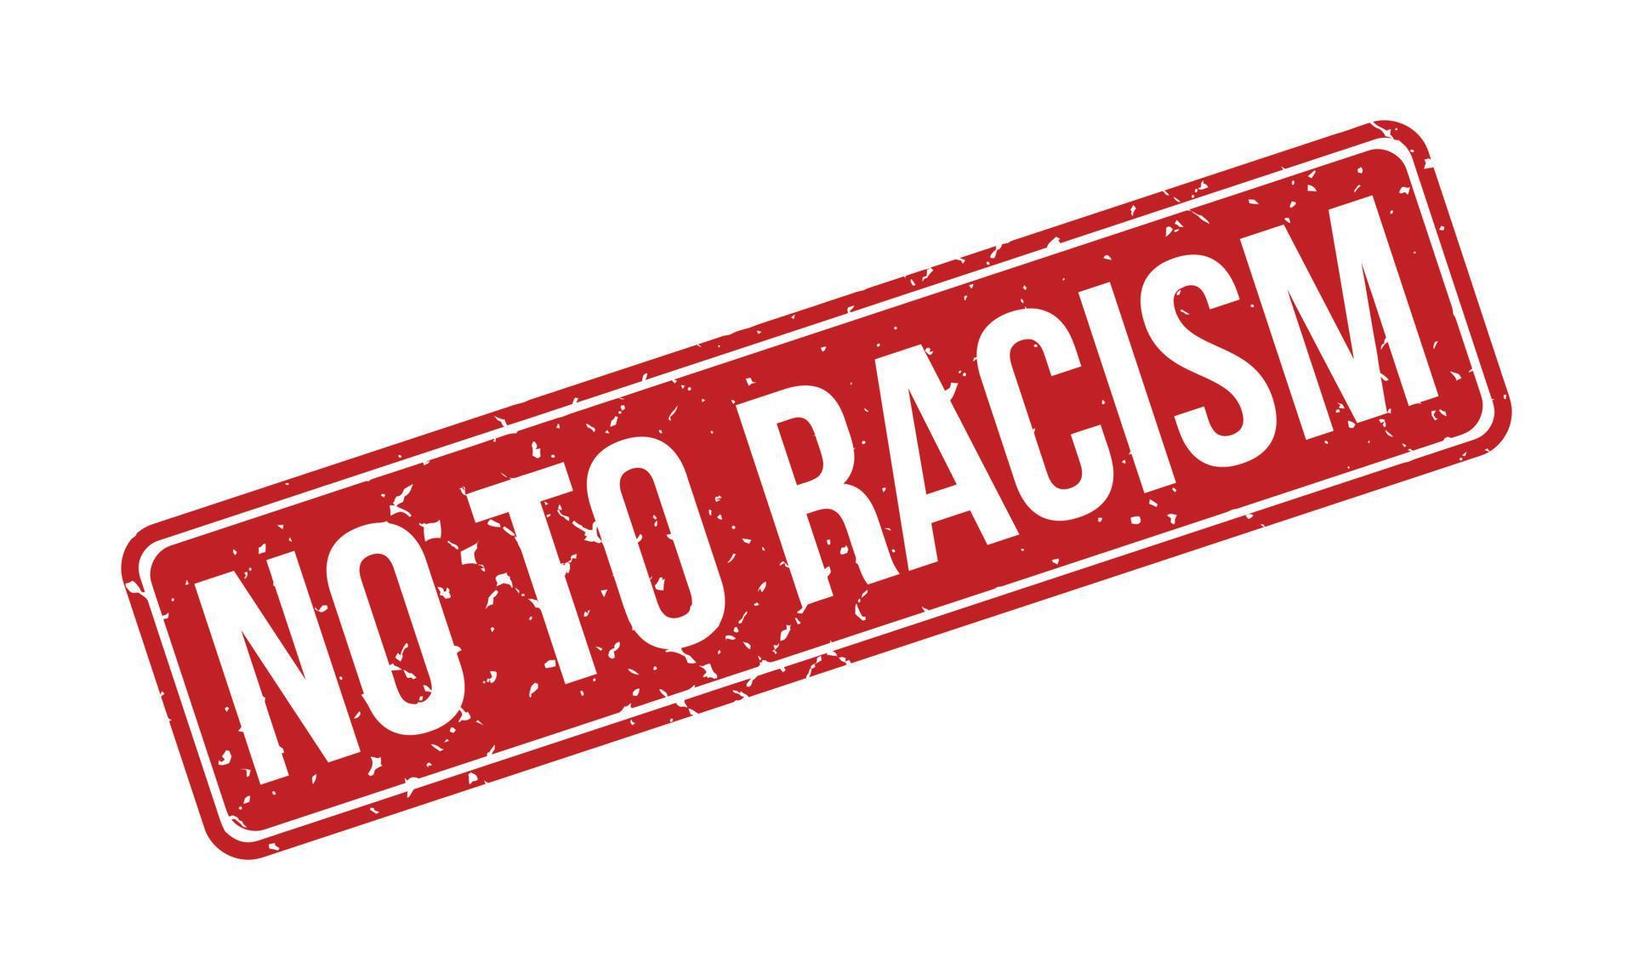 Nee naar racisme rubber grunge postzegel zegel vector illustratie